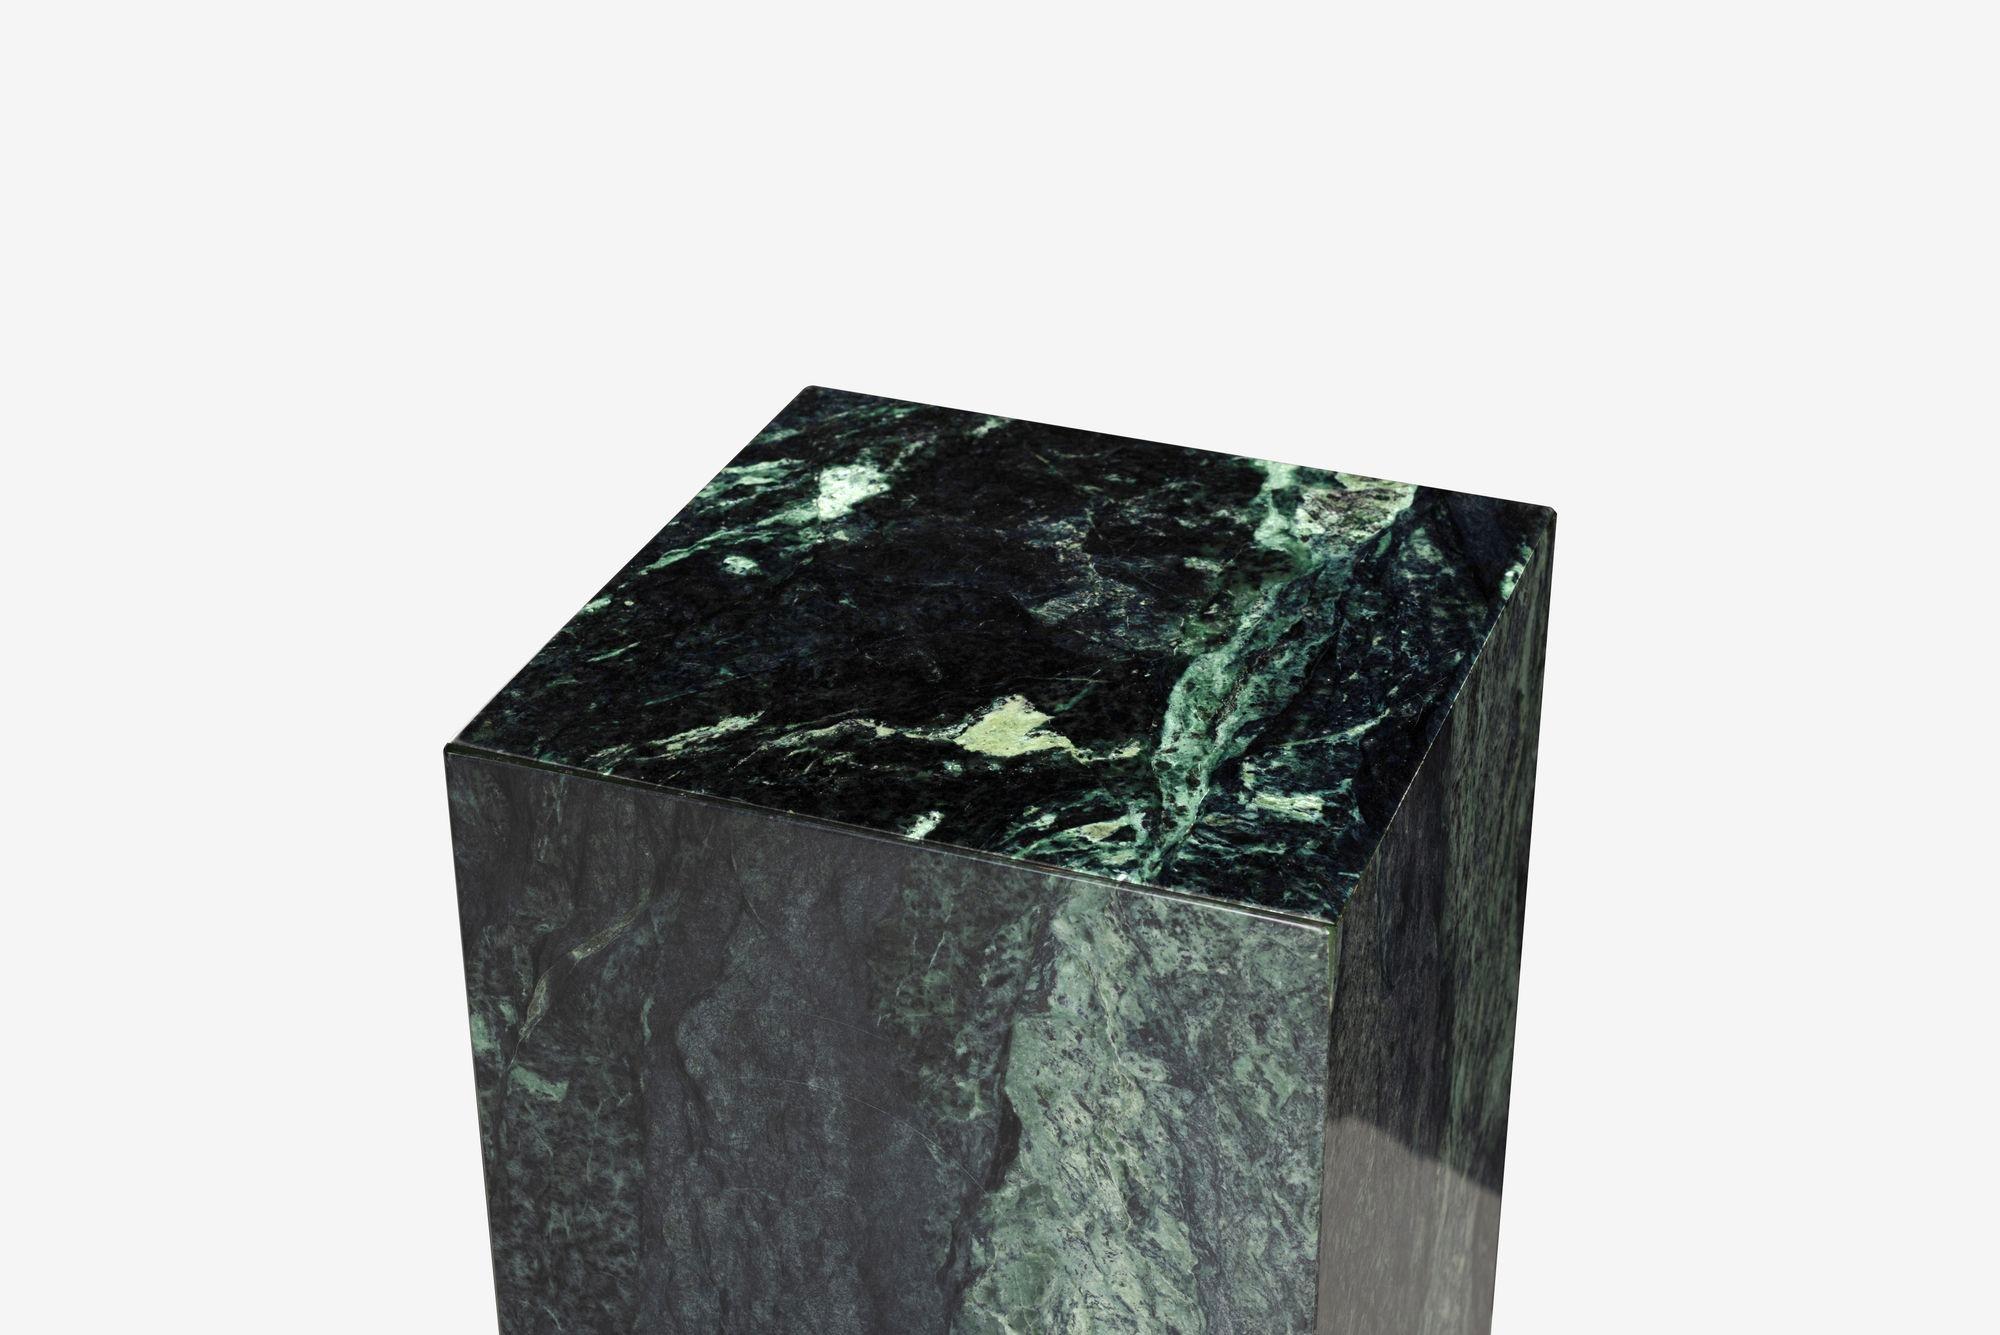 Verdi Alpi Marble Pedestal Mangiarotti Style In Good Condition For Sale In Chicago, IL